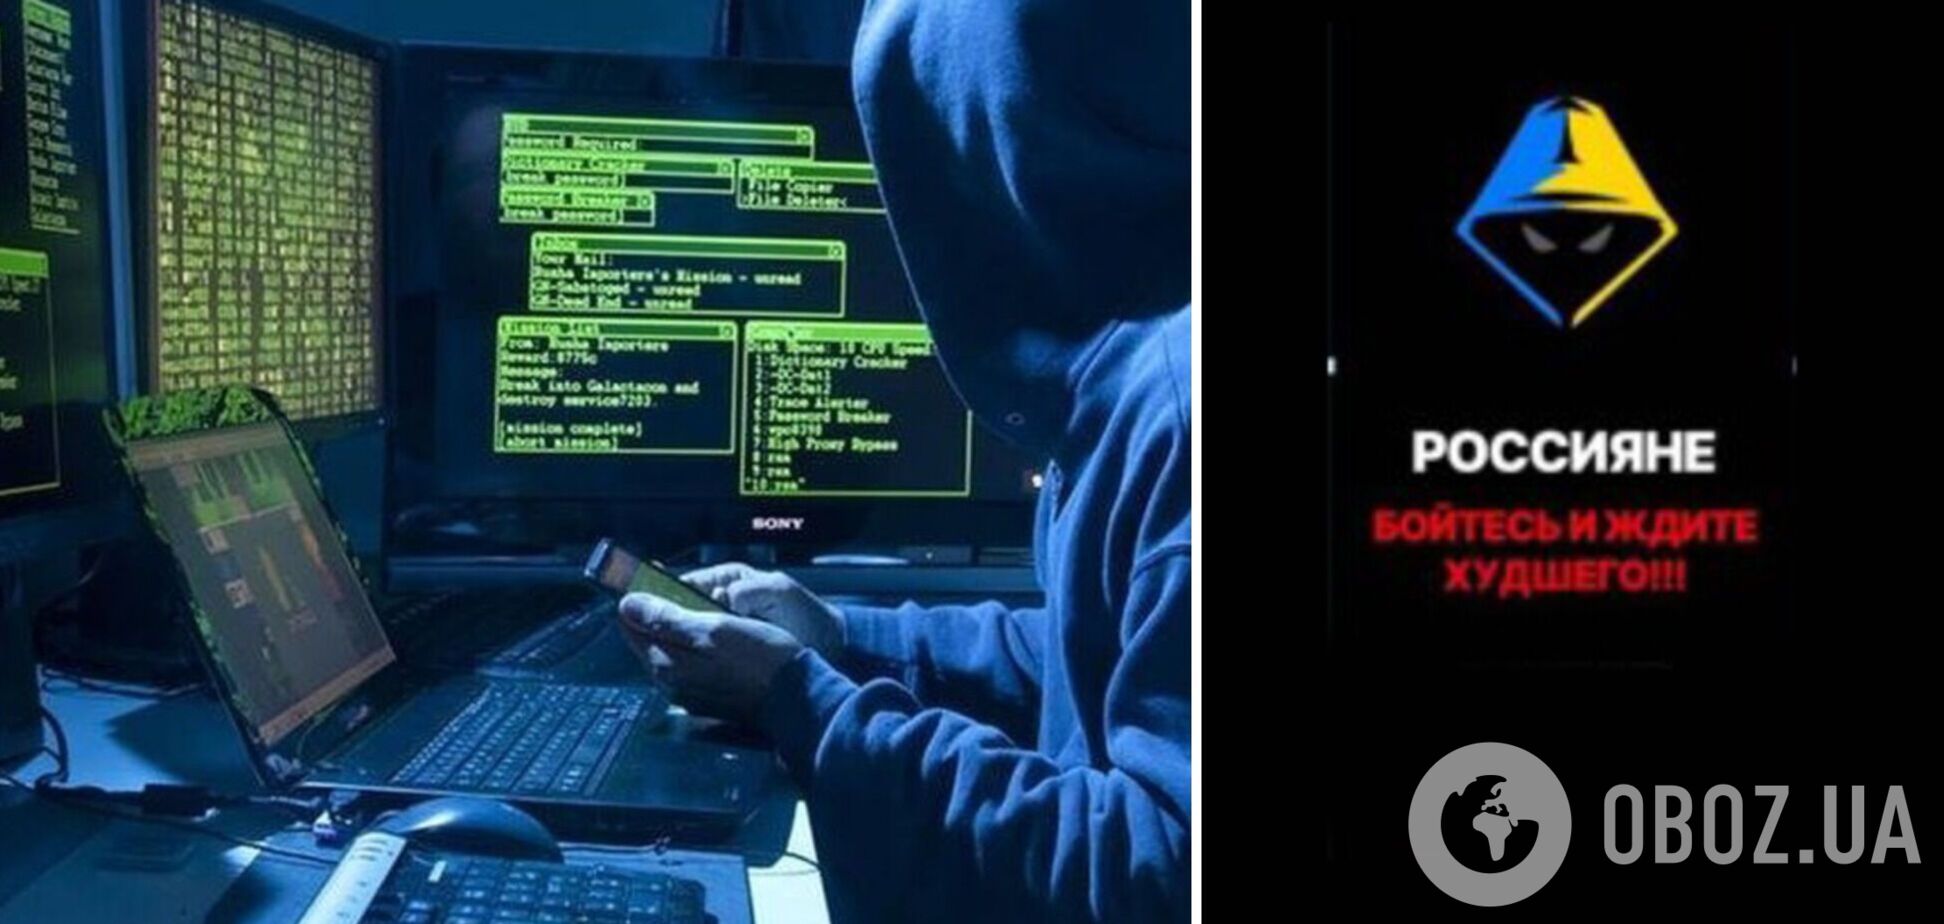 Команда хакеров 'BO Team' заставила 'прилечь' интернет в нескольких российских регионах